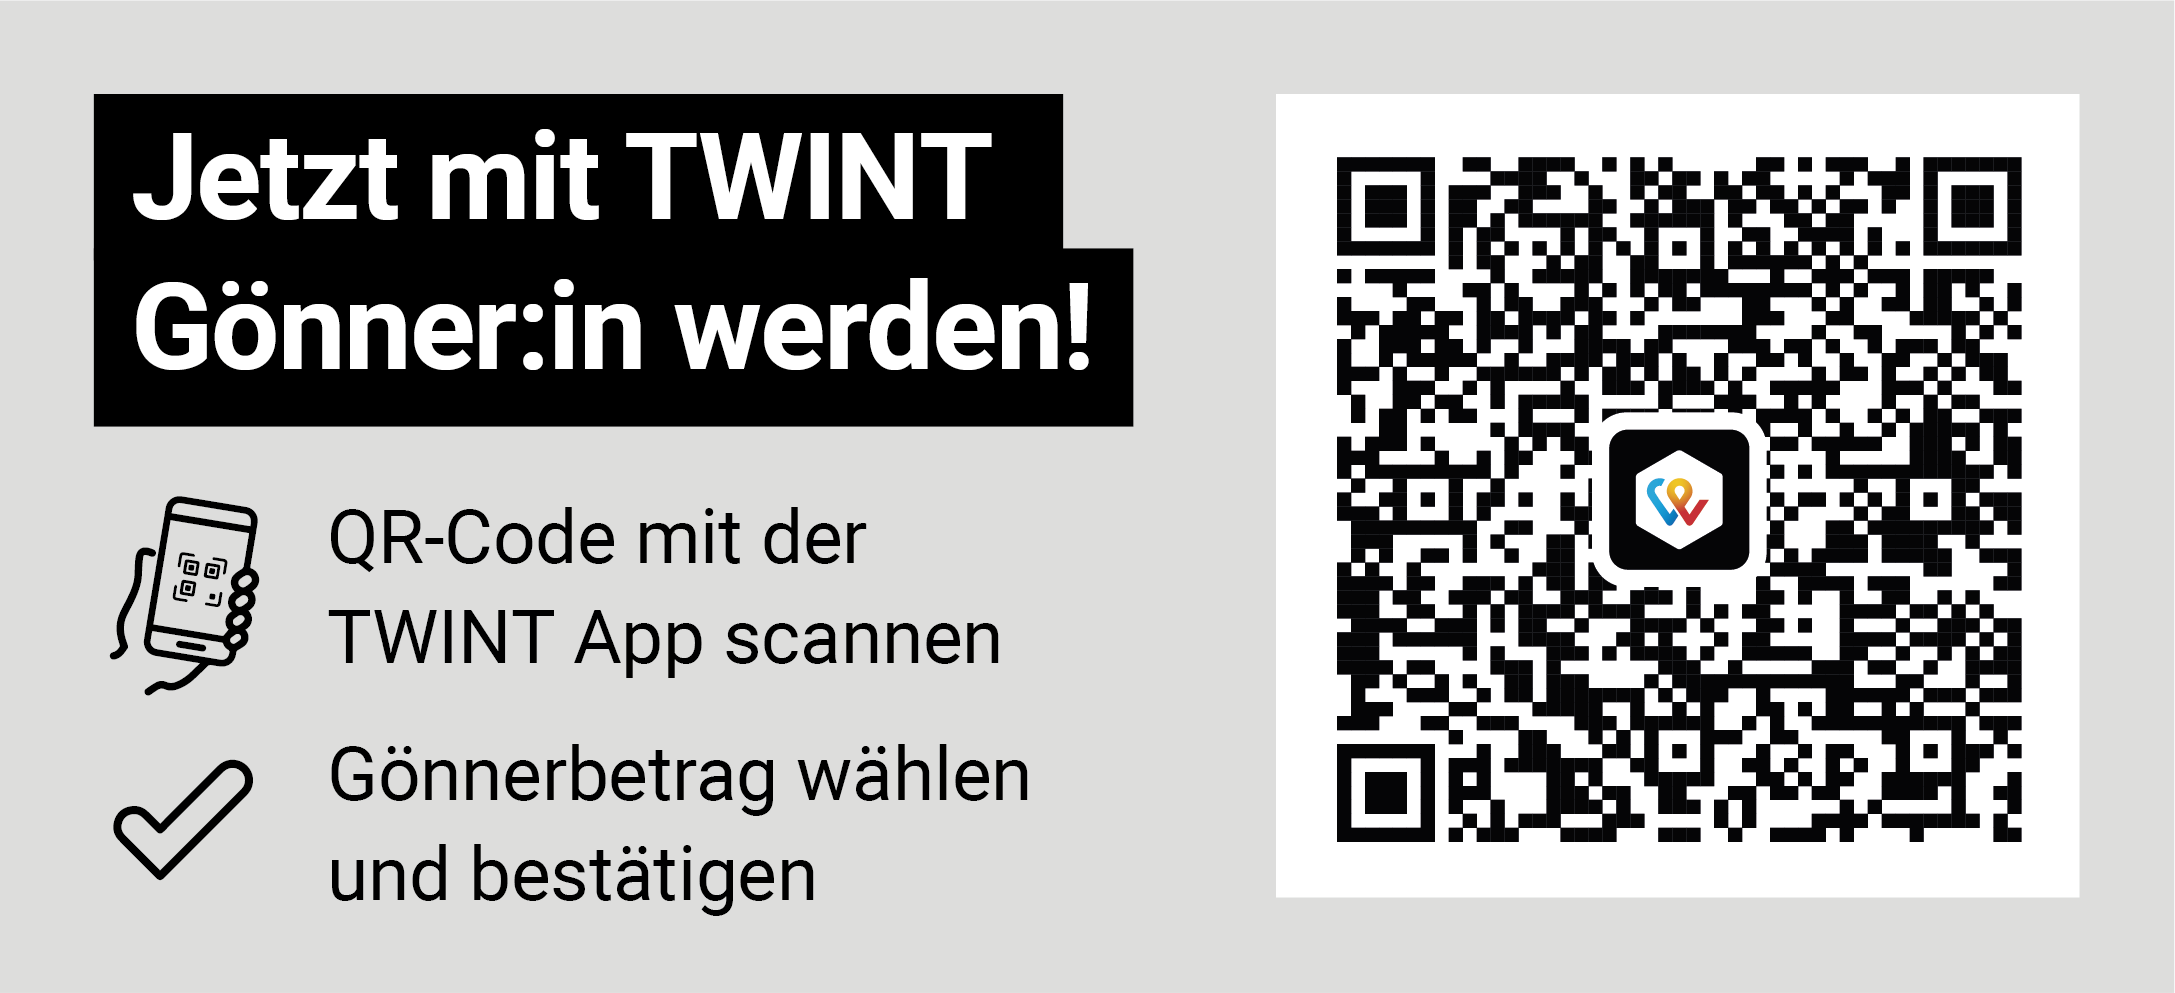 Jetzt mit TWINT Gönner:in werden! QR-Code mit der TWINT App scannen. Gönnerbetrag wählen und bestätigen.